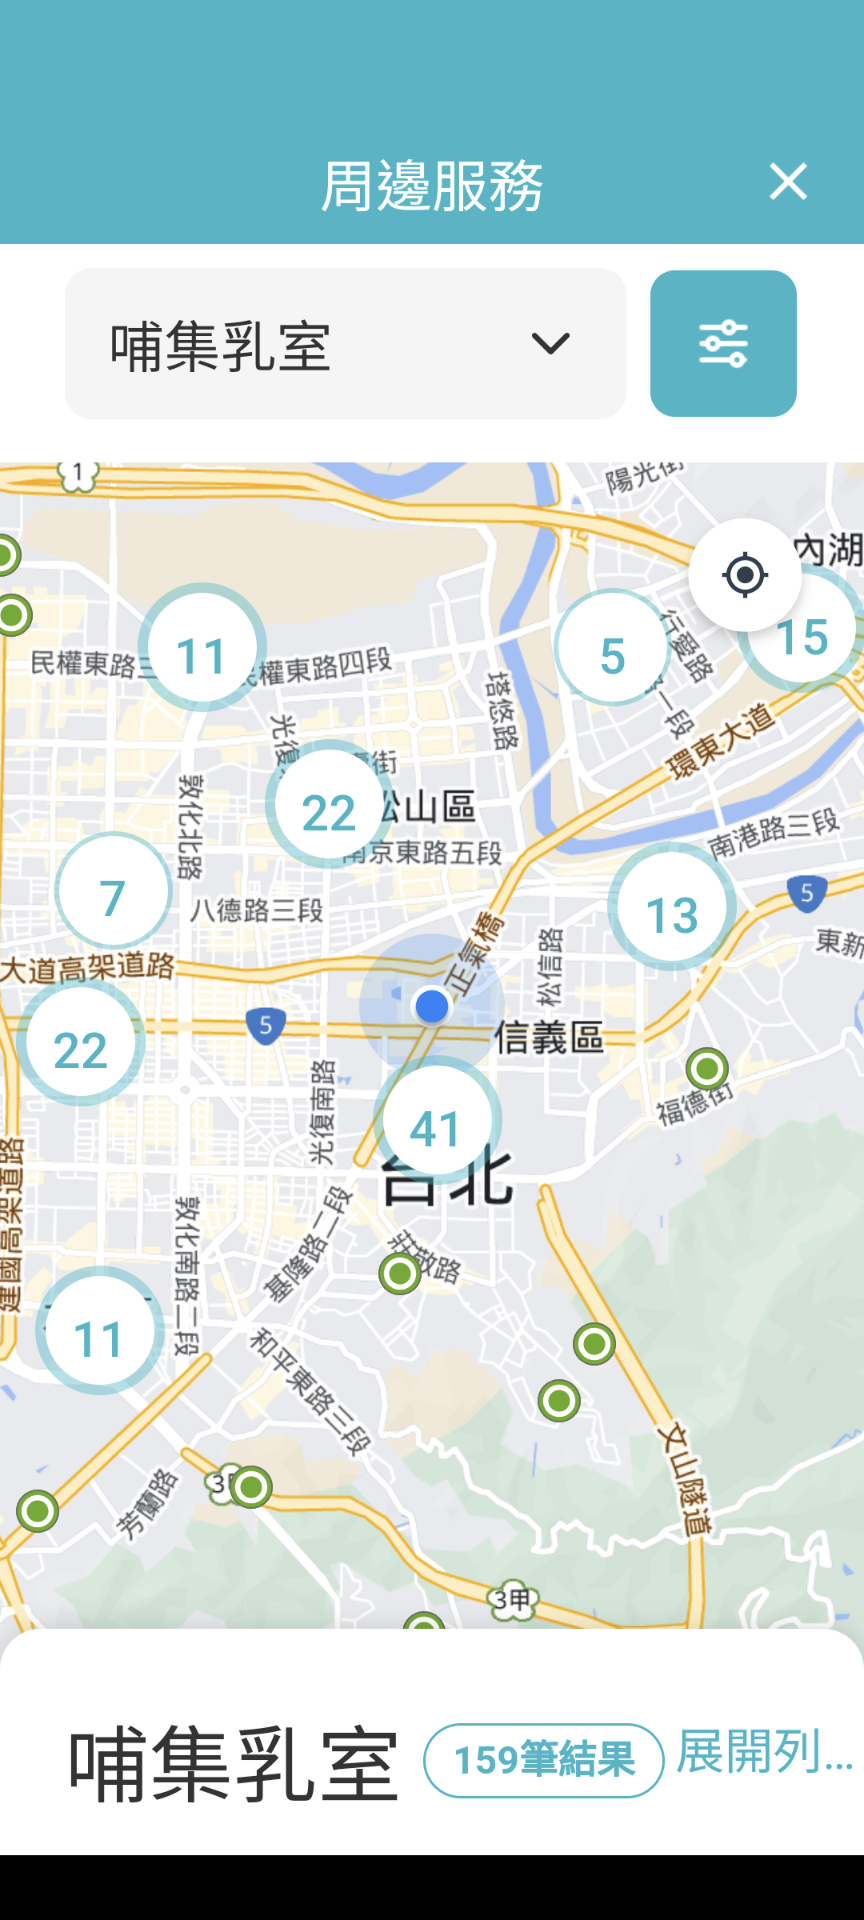 「臺北通」App提供查詢哺(集)乳室地點的貼心服務